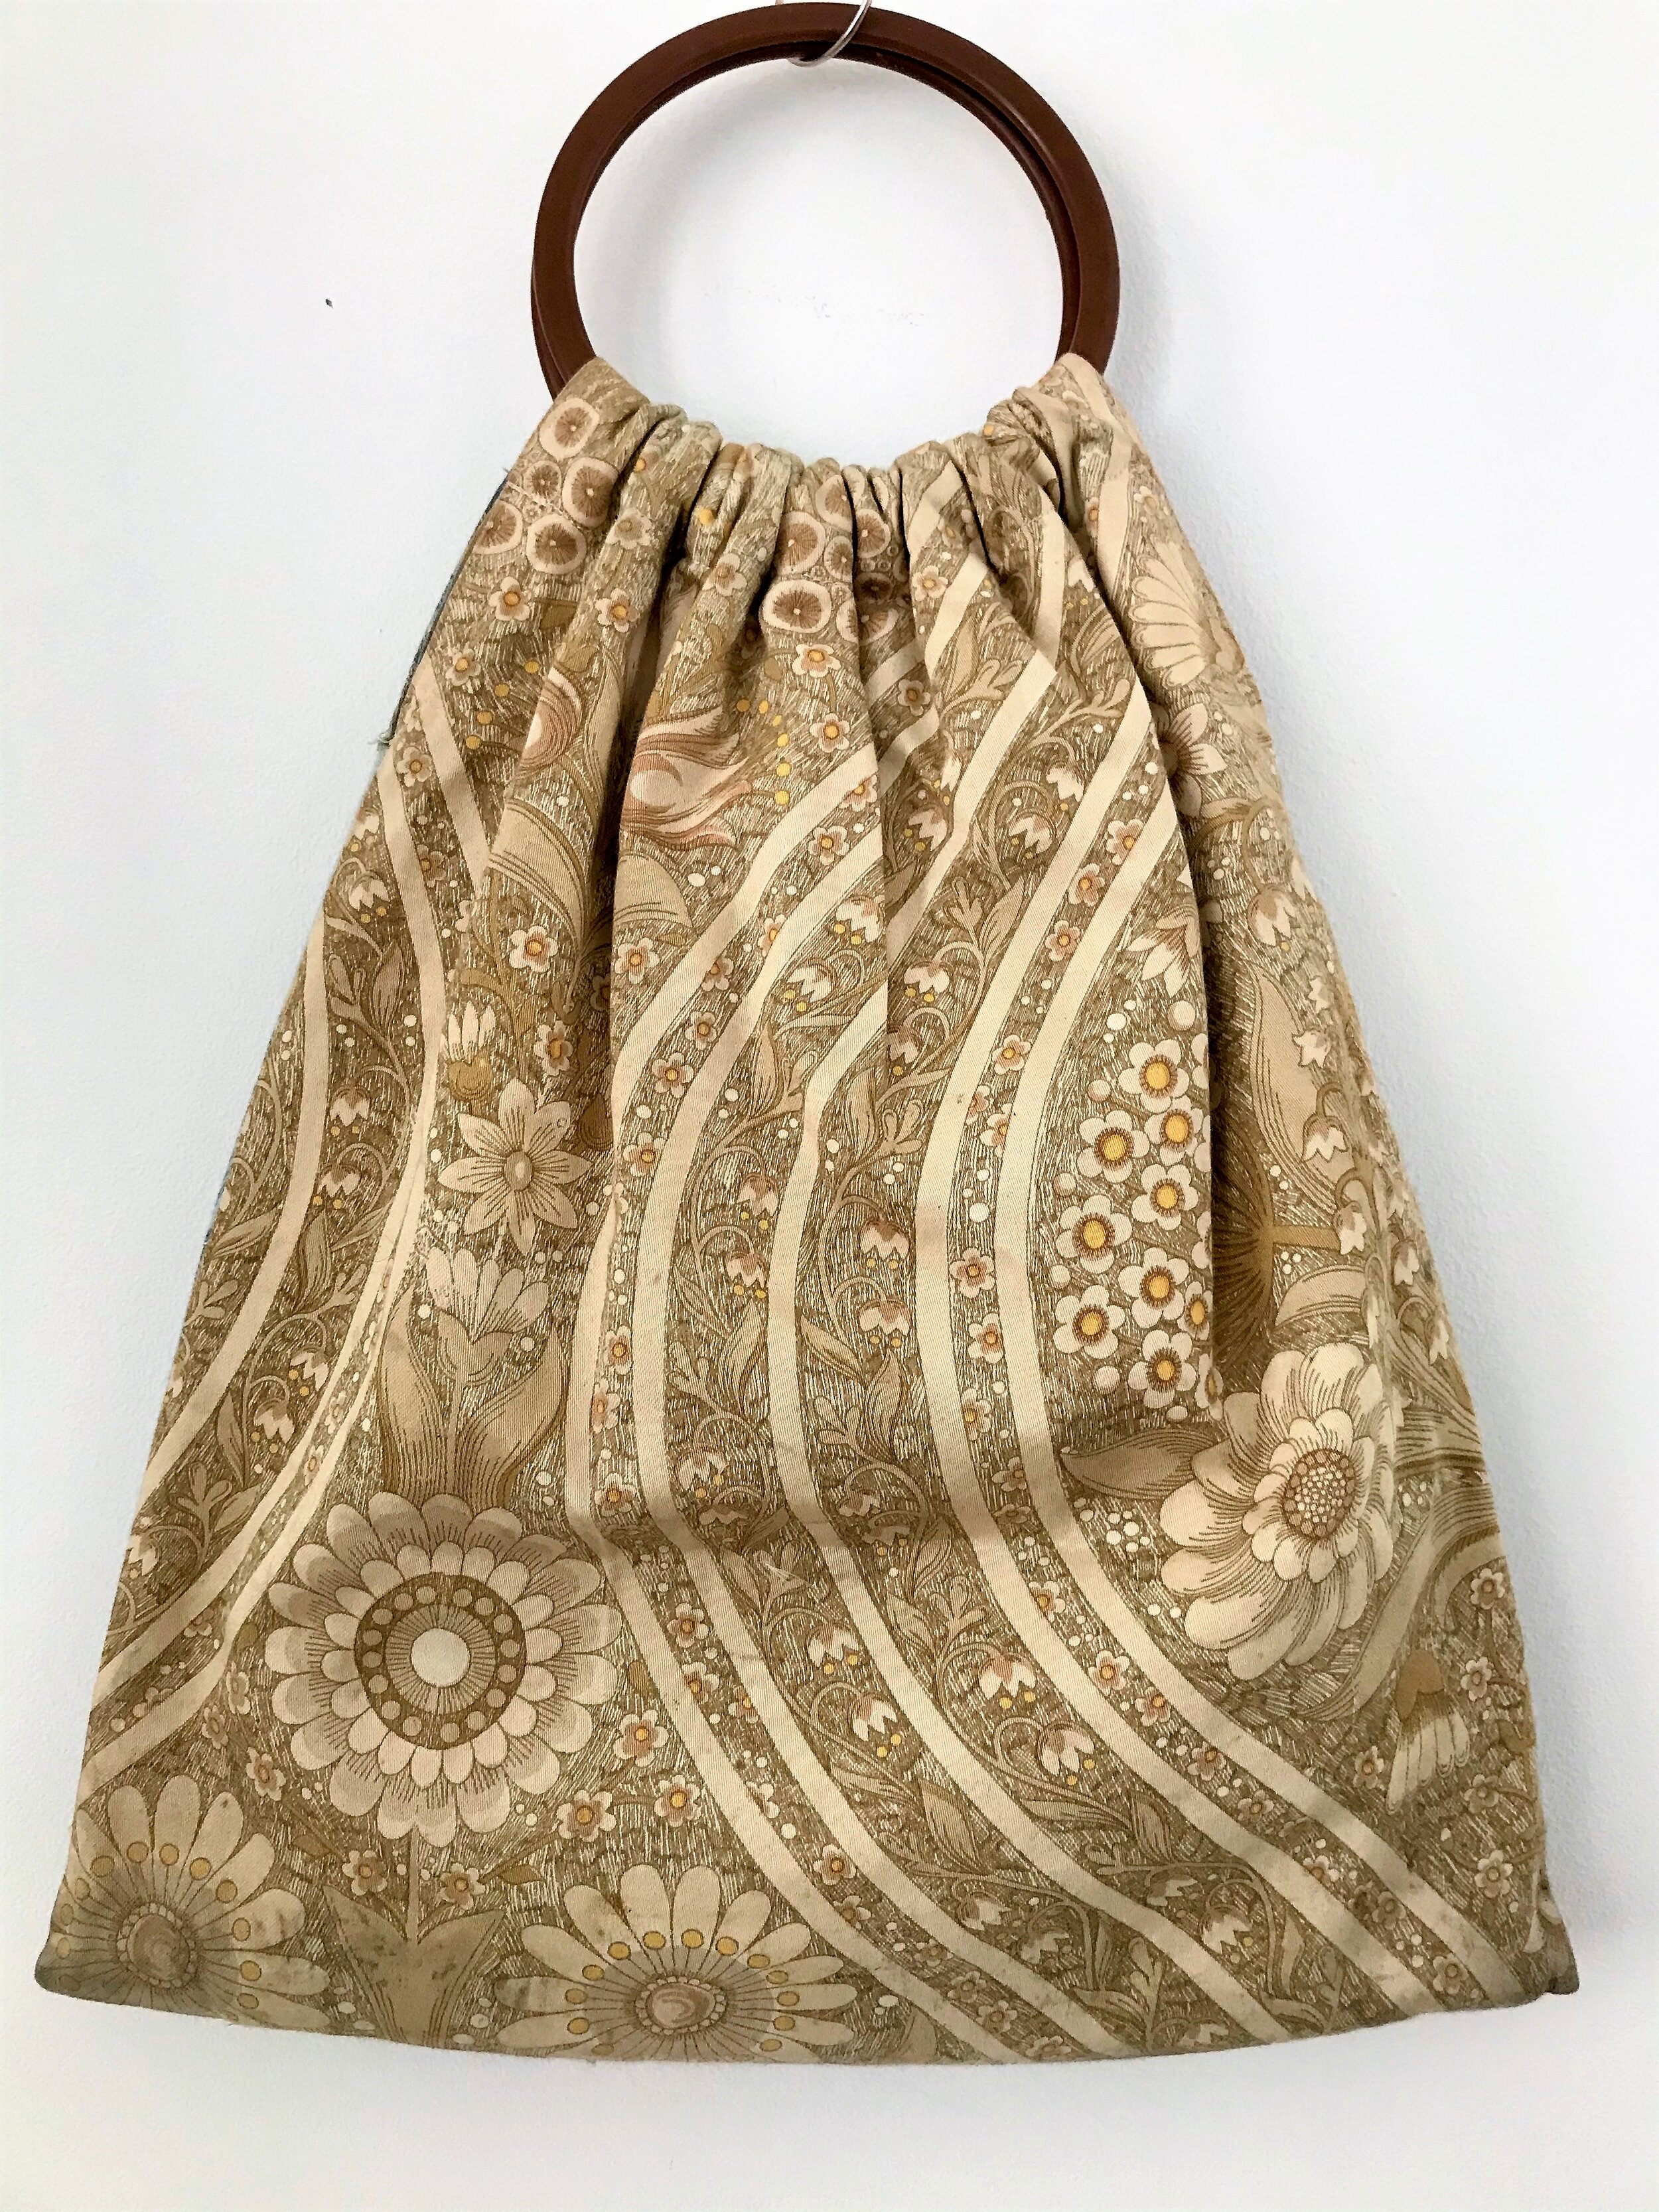 Vintage barkcloth bag with wood handles  Knitting Knitting bag sewing  Bags